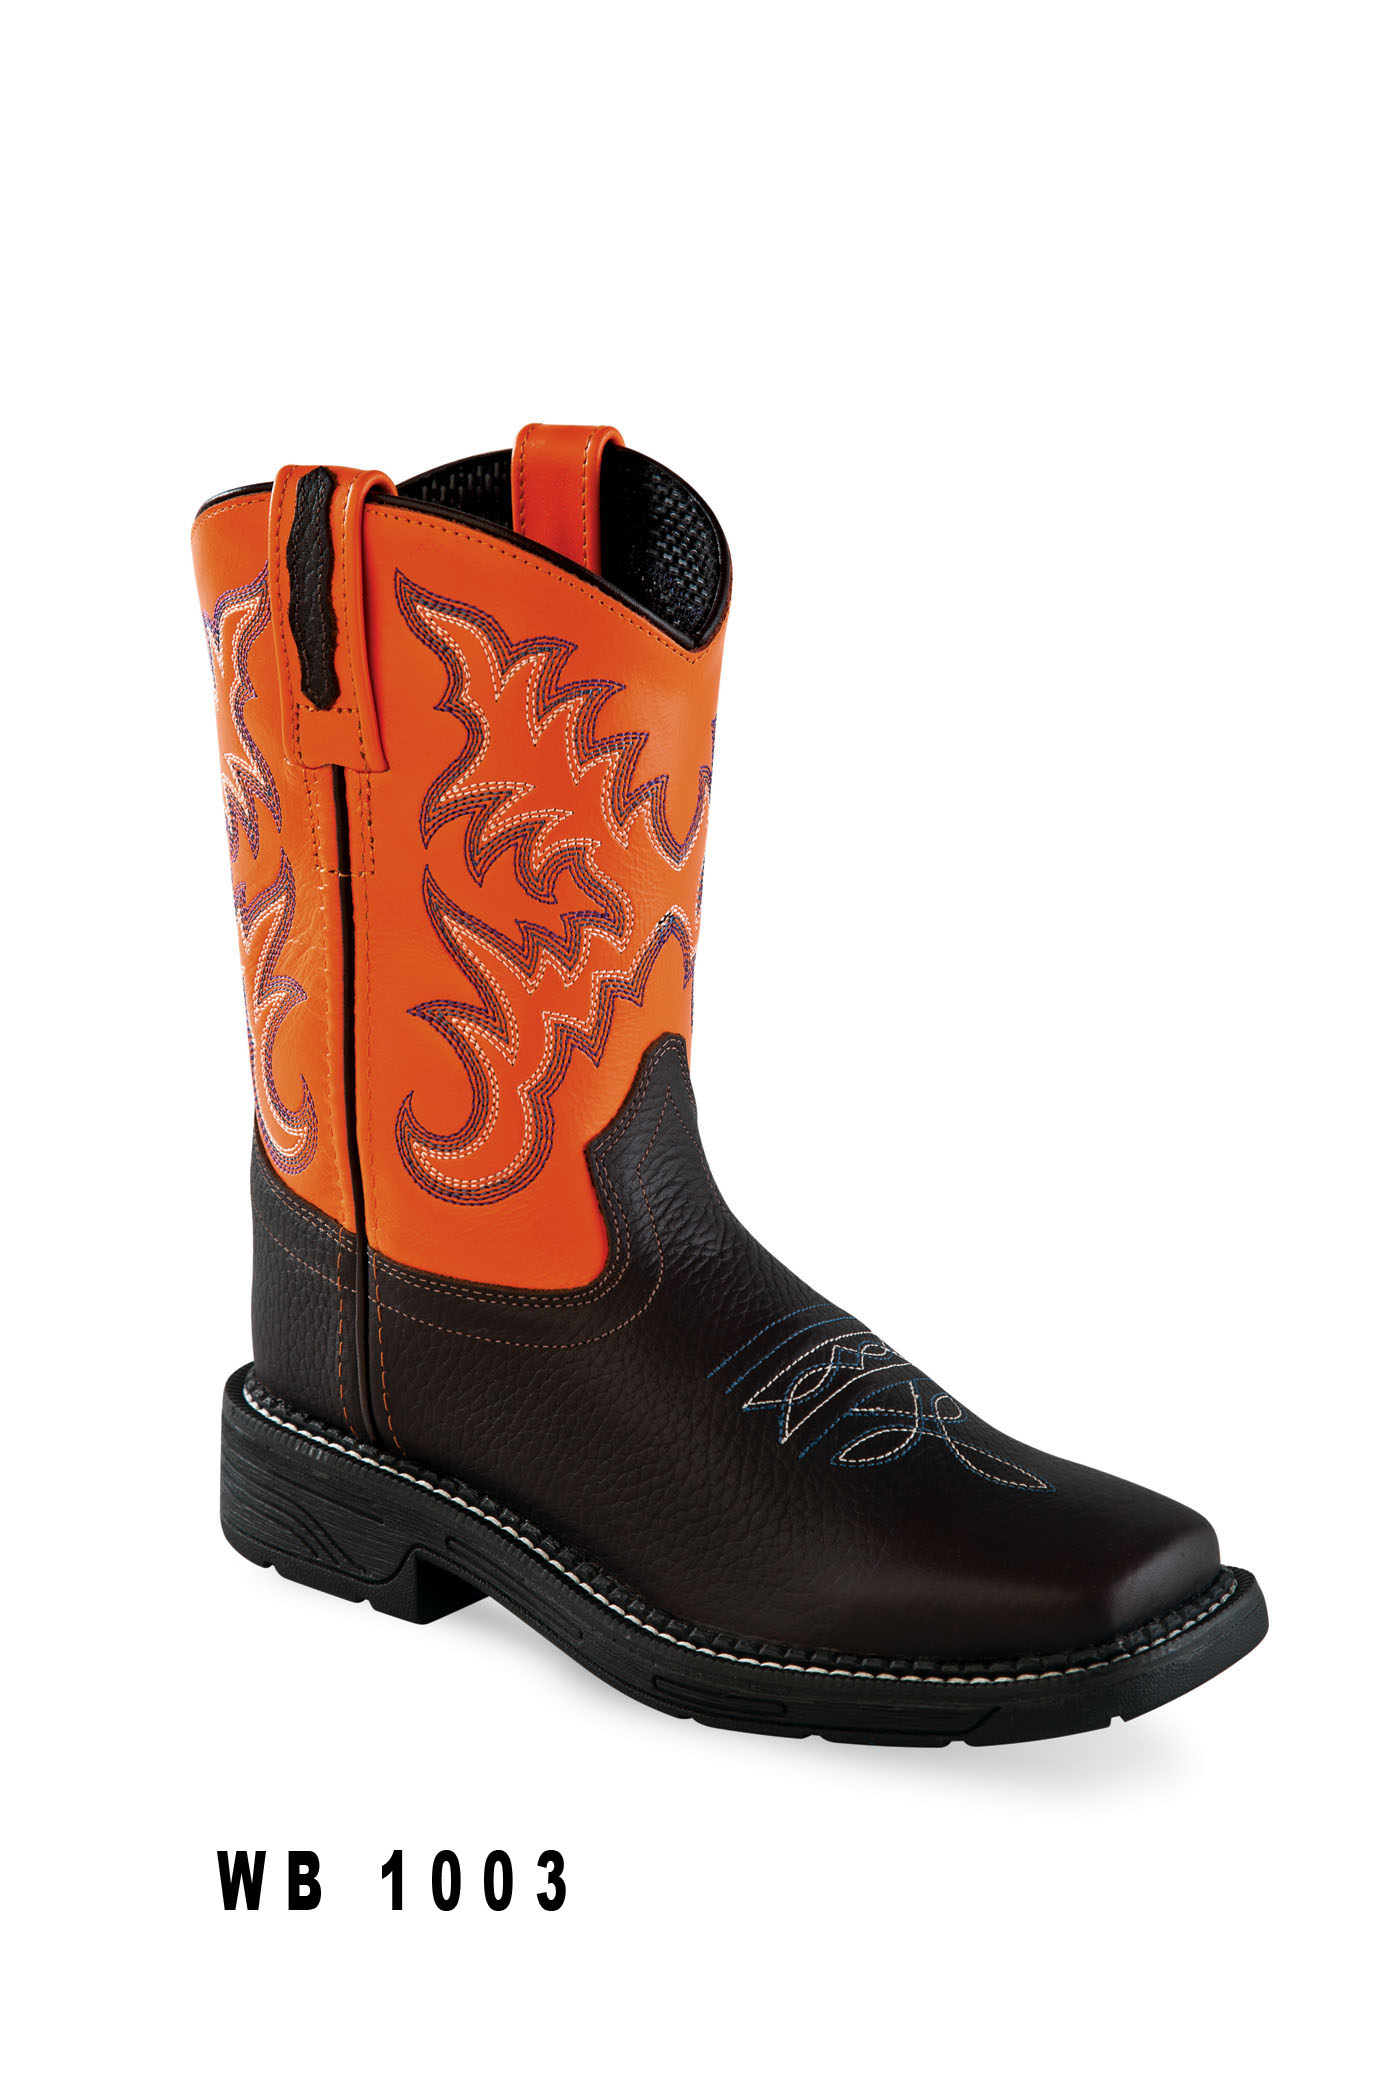 Cowboy boots for children WB1003, orange-brown